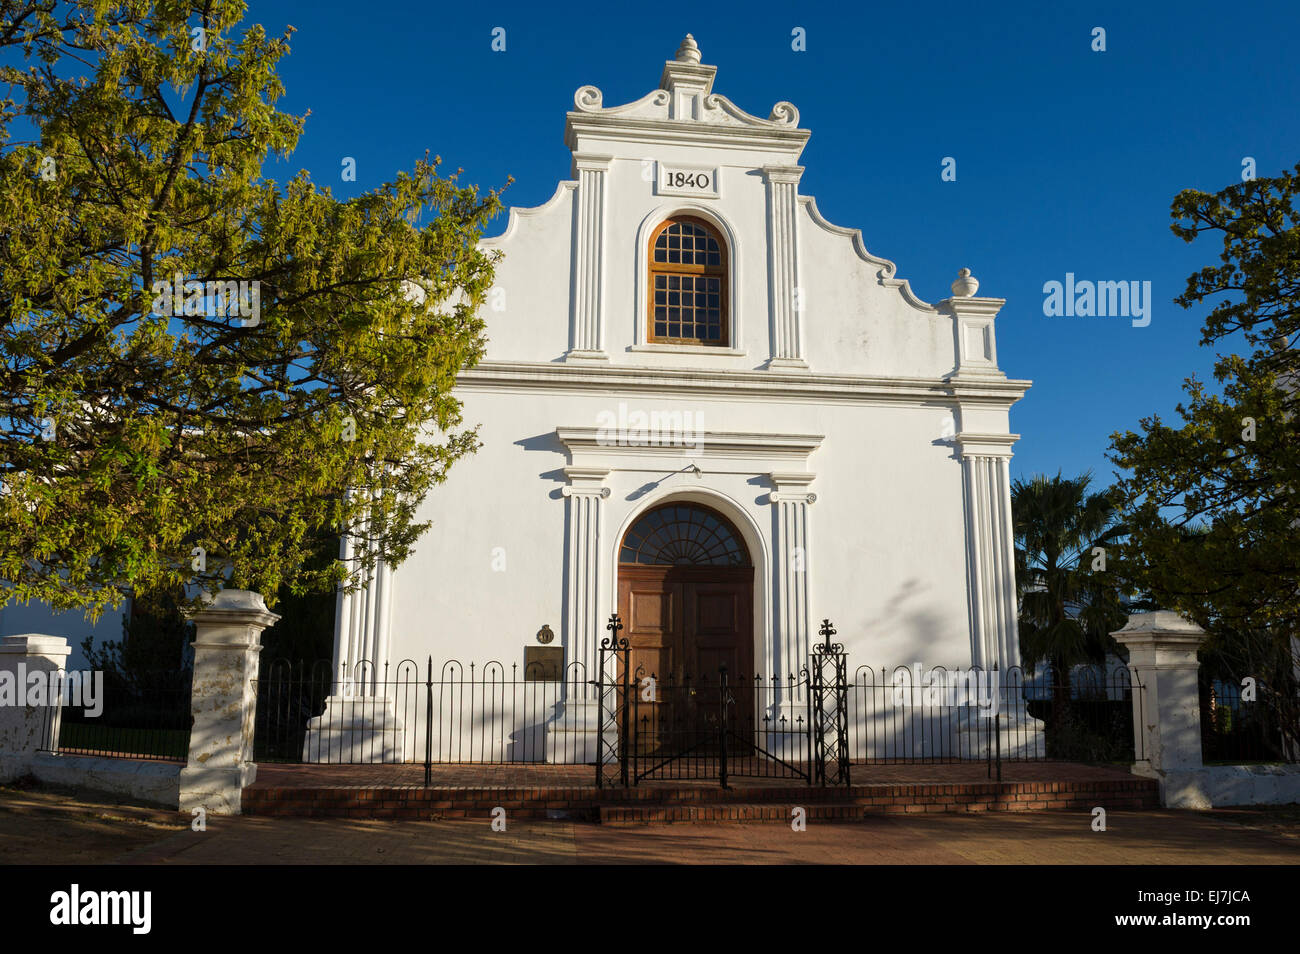 Rhenisch church, Stellenbosch, South Africa Stock Photo